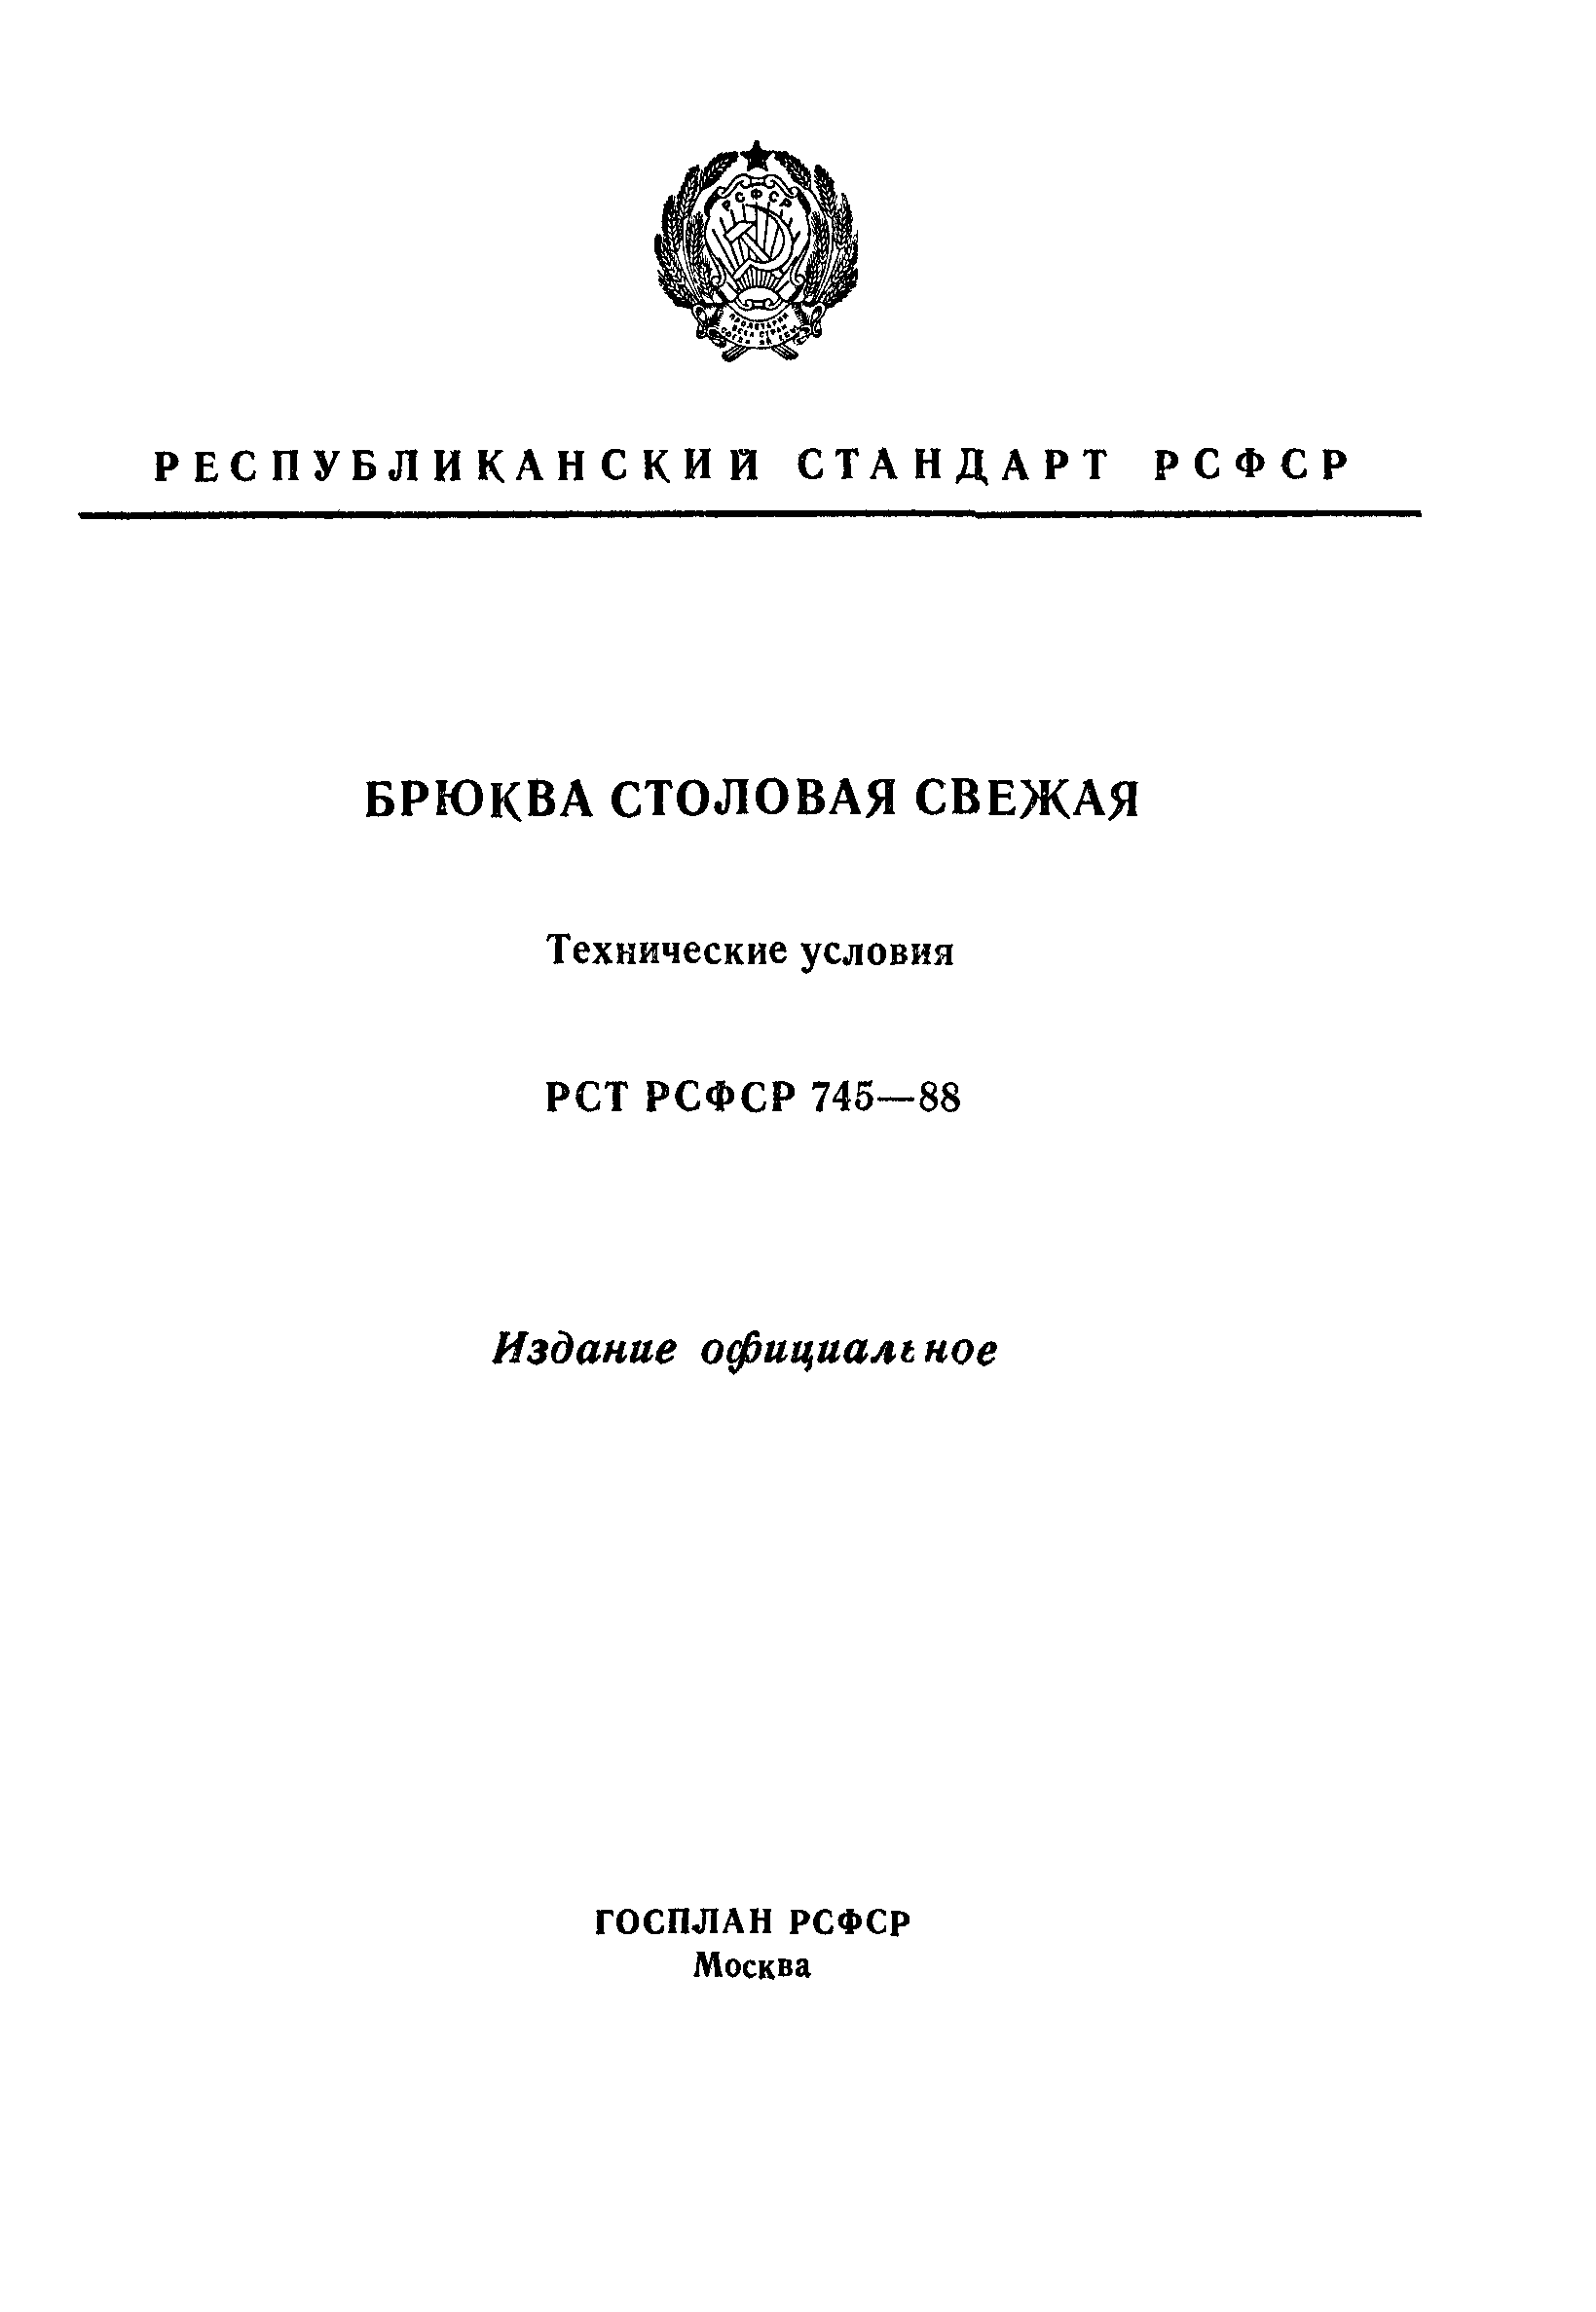 РСТ РСФСР 745-88